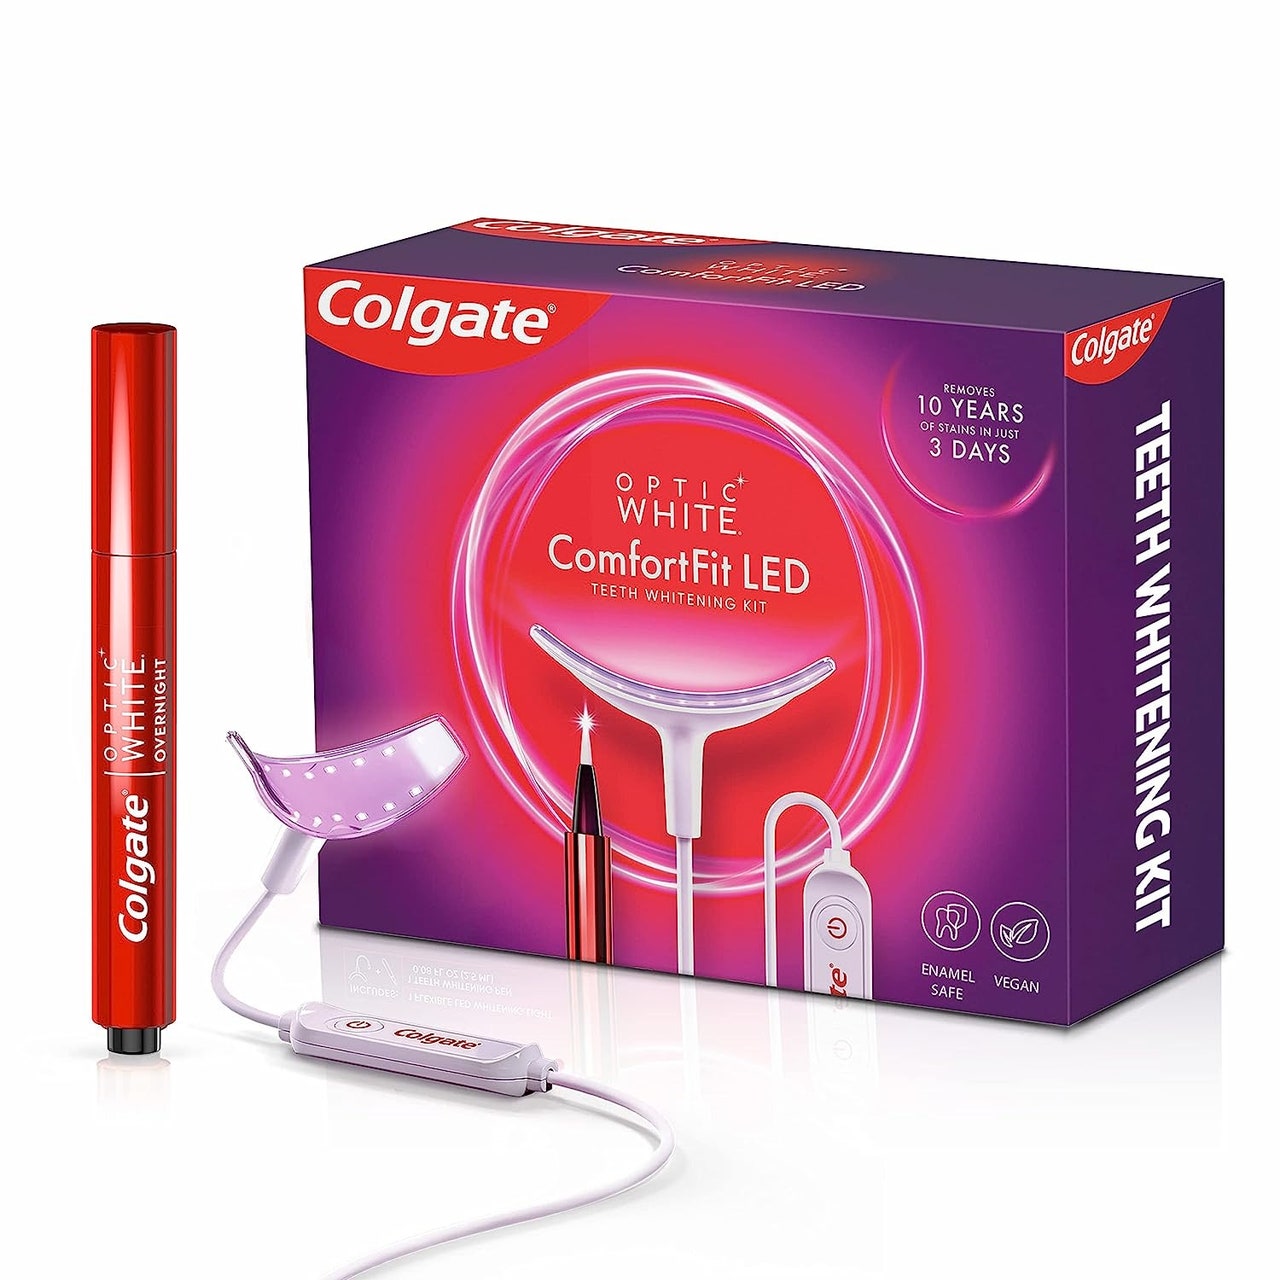 Colgate Optic White ComfortFit LED-Zahnaufhellungsset auf weißem Hintergrund